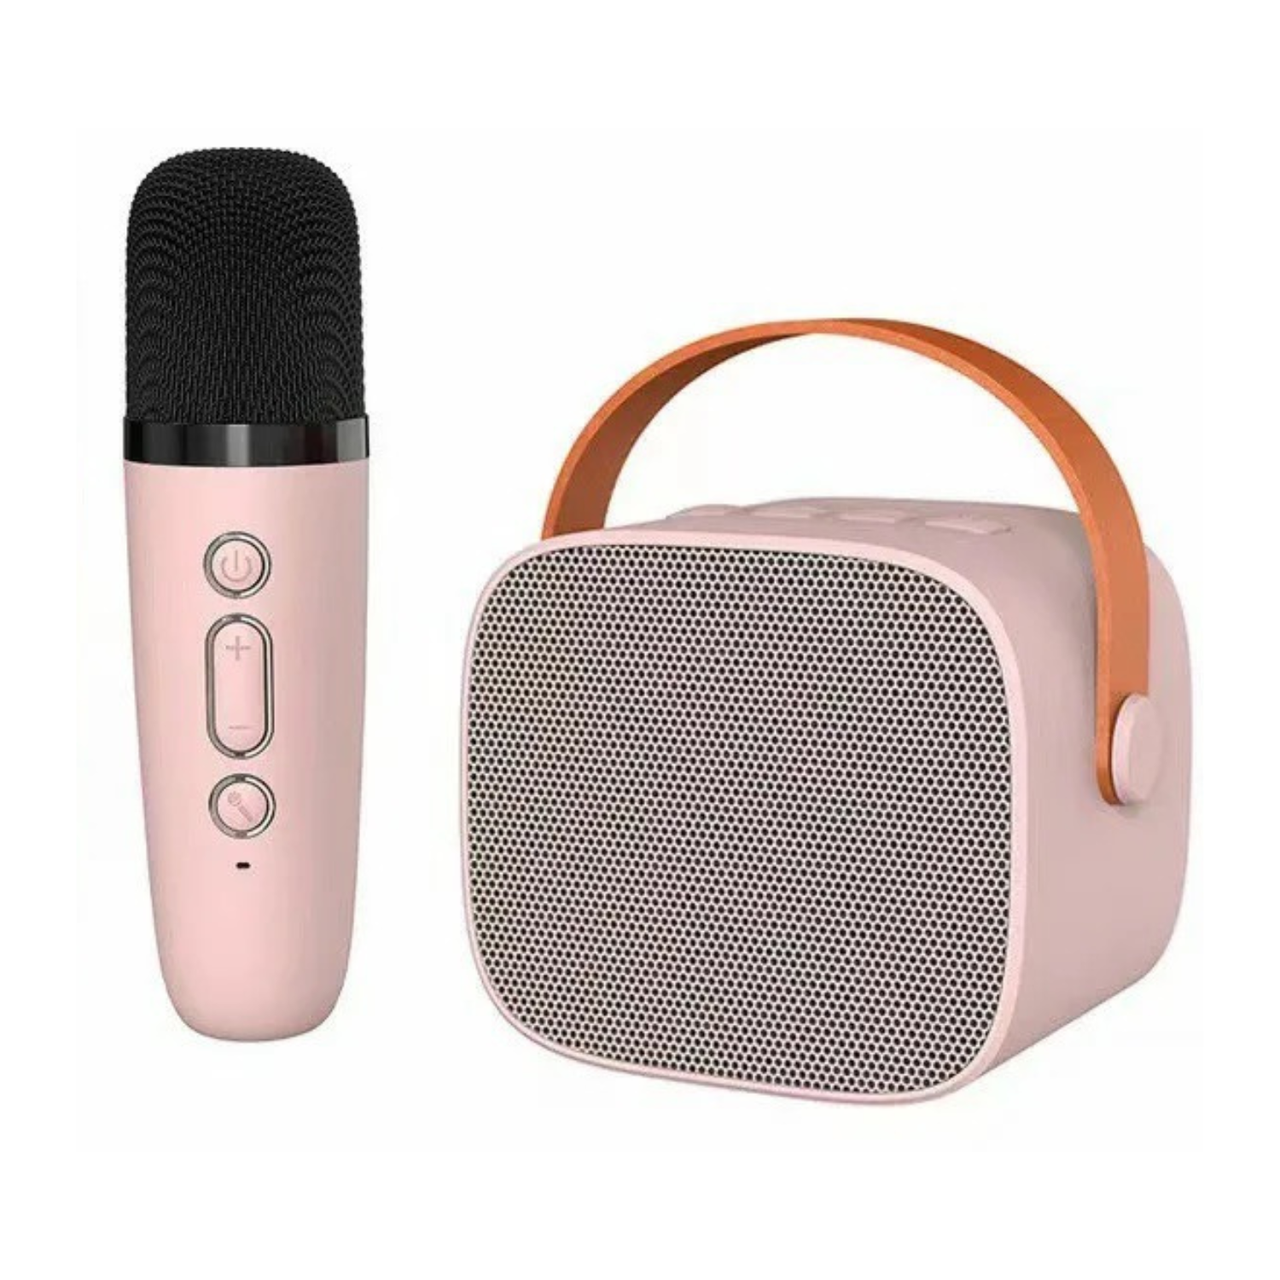 Дитяча  Караоке Система Портативна Bluetooth Колонка + Мікрофон із функцією Зміни Голосу Р2 дитяче караоке